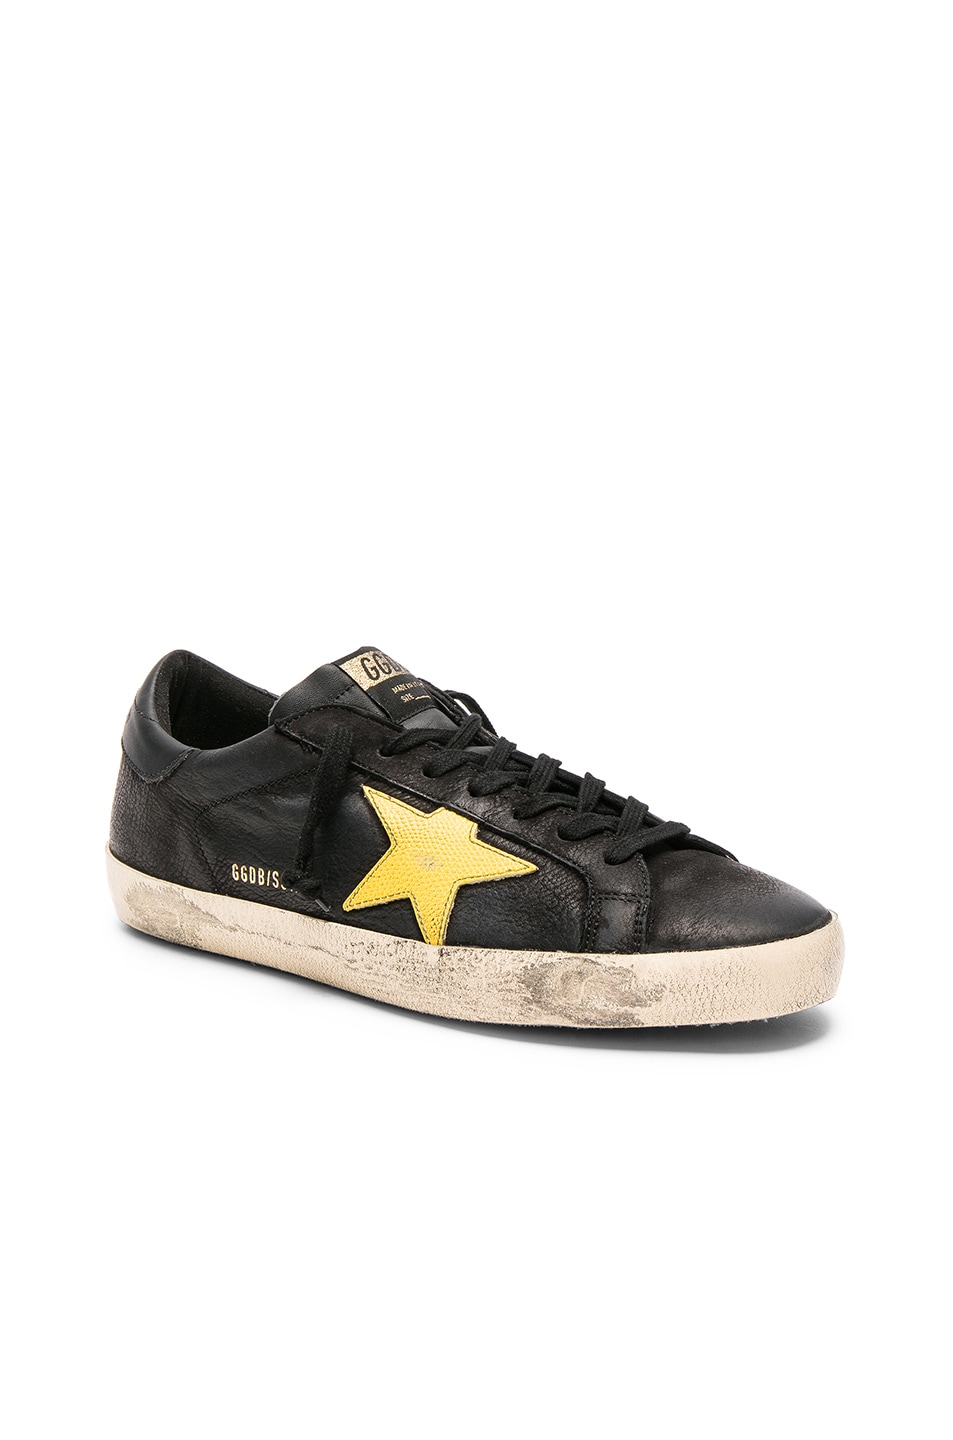 Image 1 of Golden Goose Superstar Sneakers in Black & Yellow Star